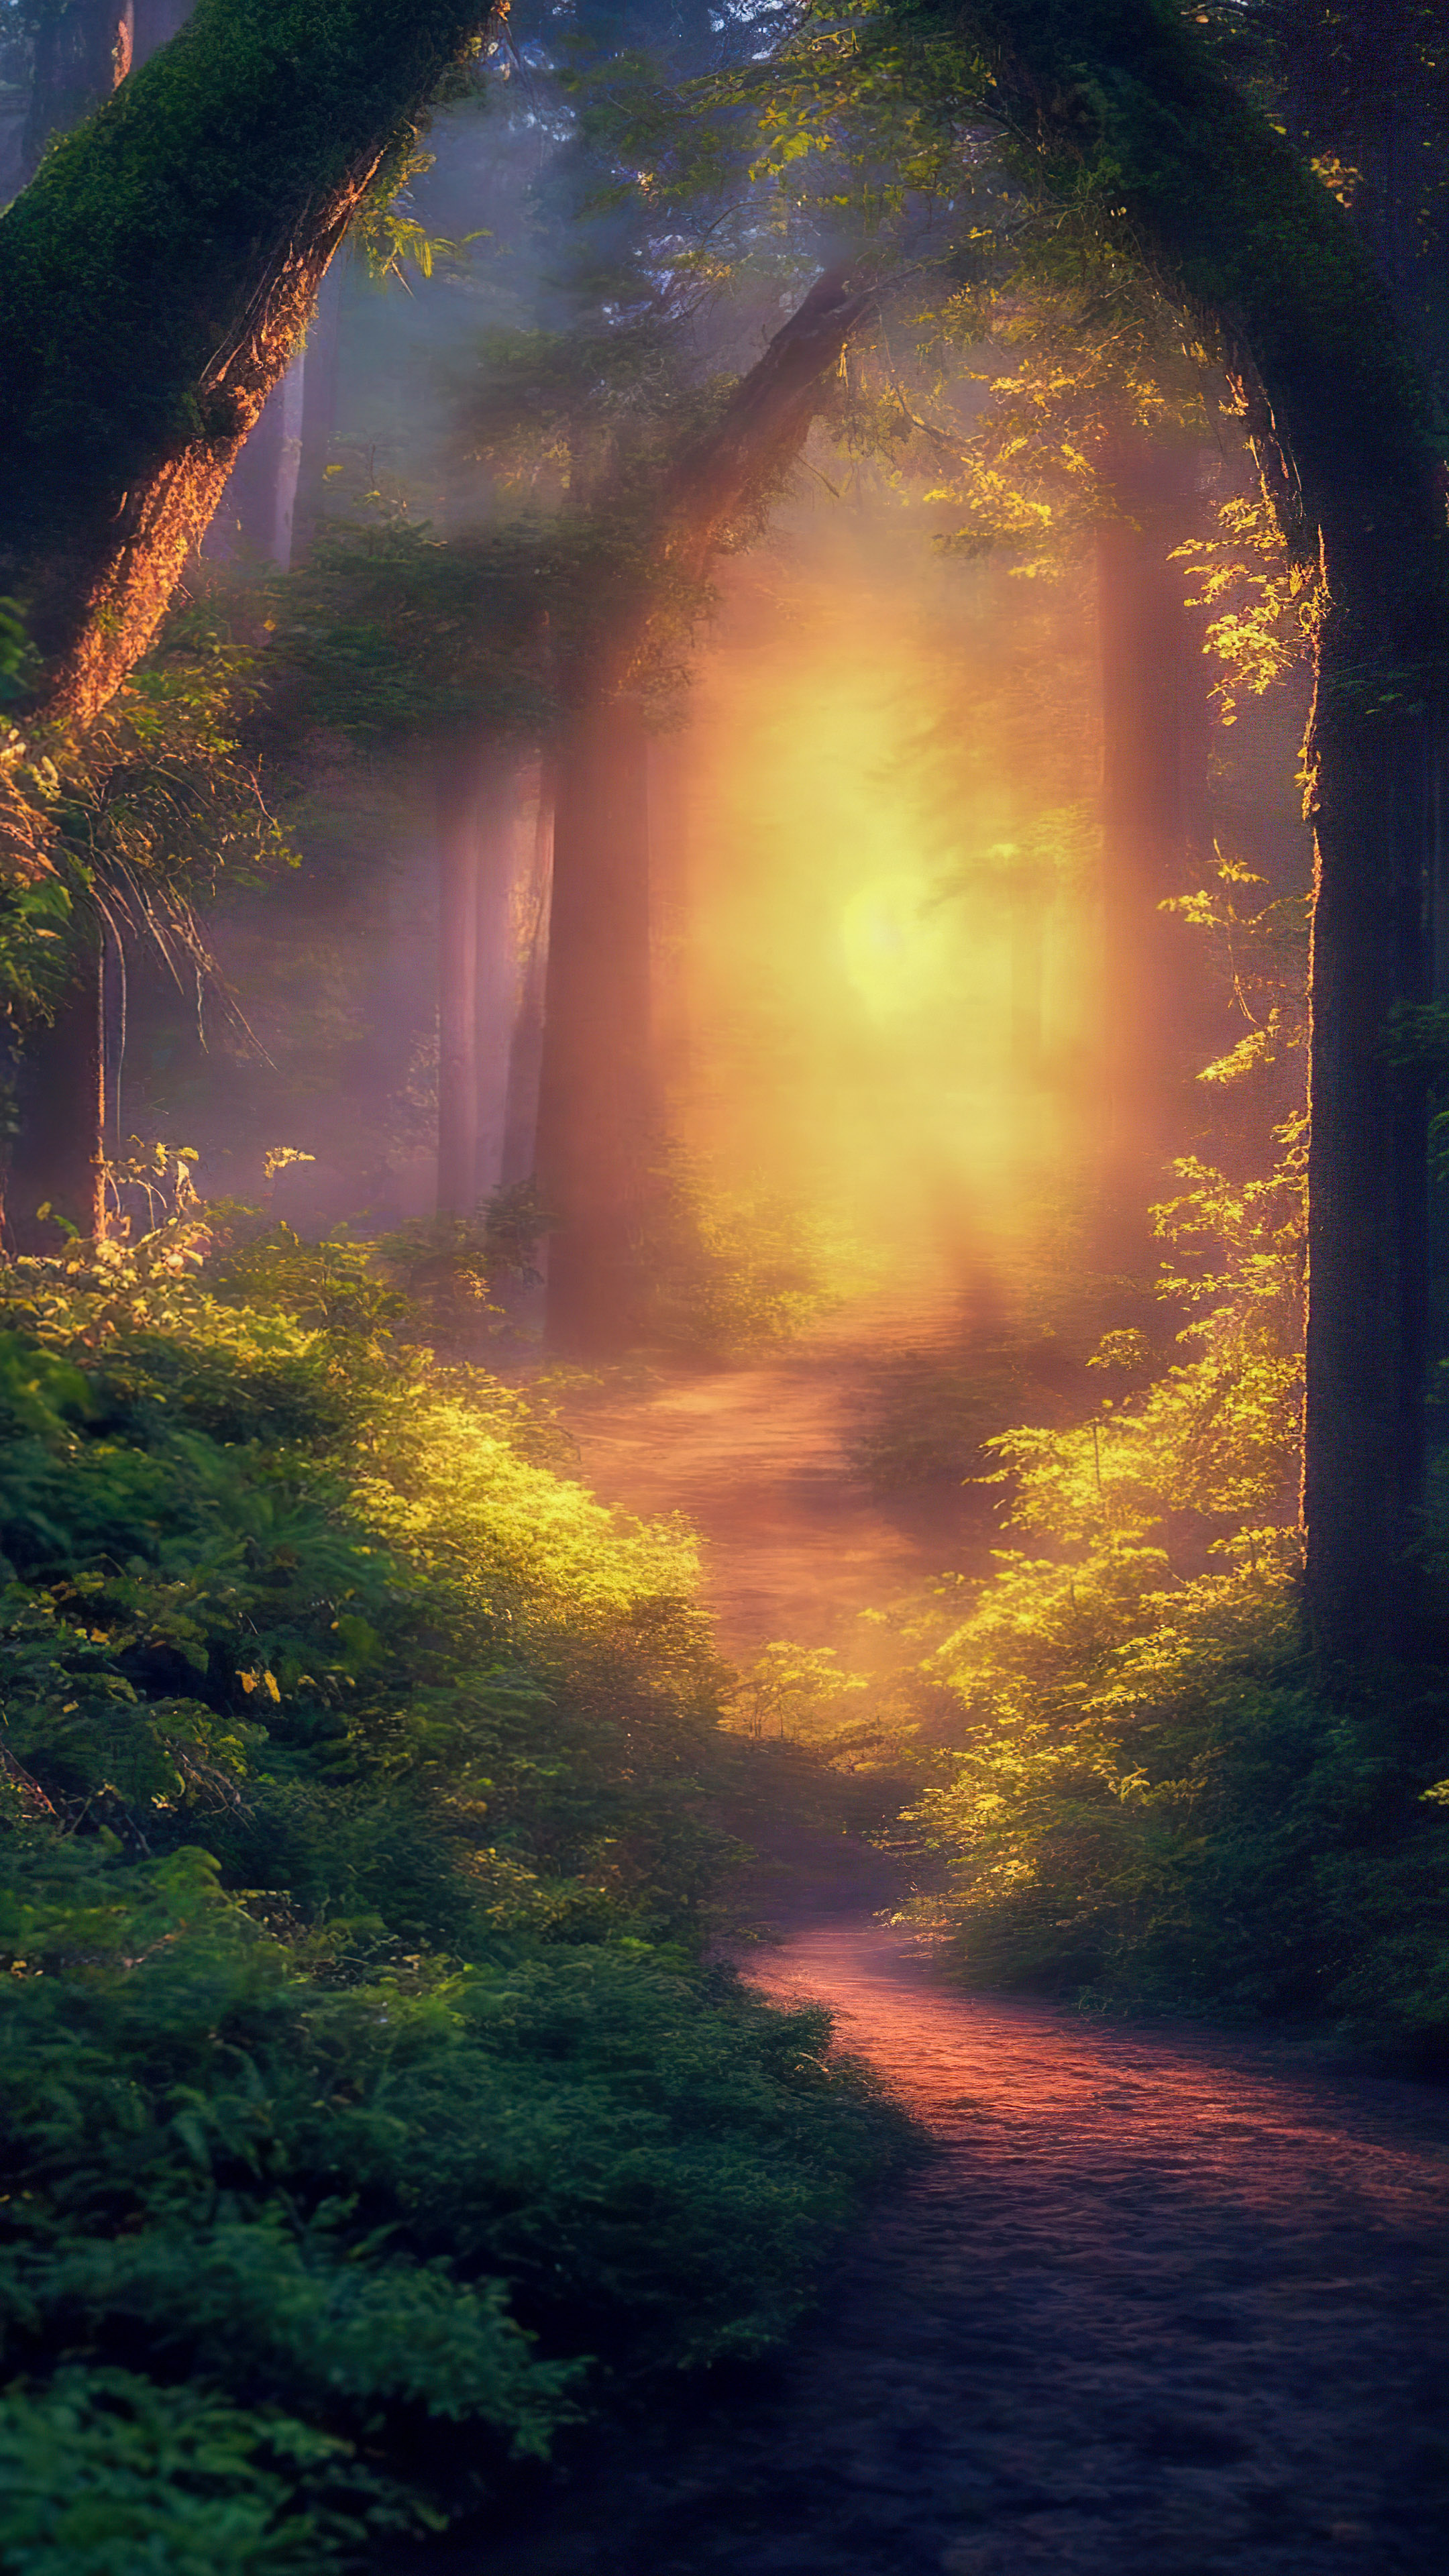 Immergez-vous dans une forêt magique illuminée par la douce lueur des lucioles lors d'une soirée d'été chaude avec notre fond d'écran en 4K des paysages.